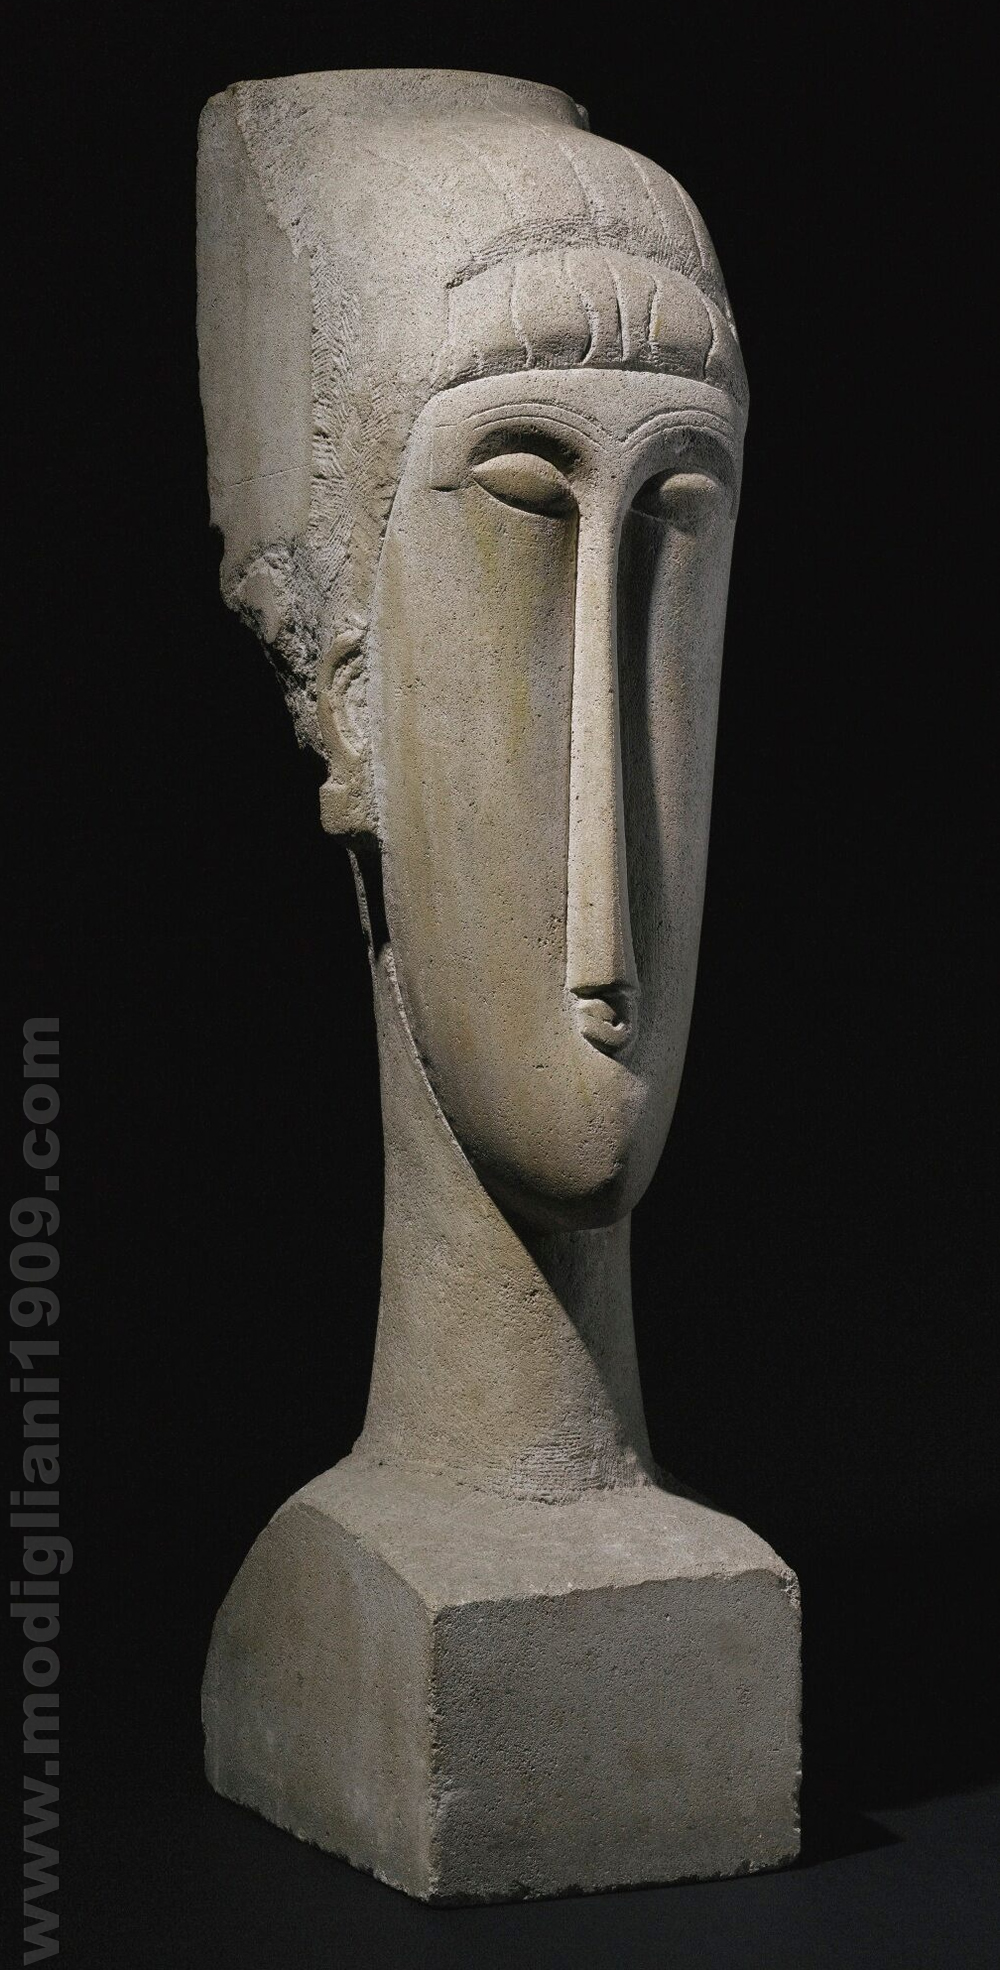 Testa, Amedeo Modigliani, 1911 - 1912, Pietra - testa acquistata da Augustus John direttamente dall'artista nel 1912